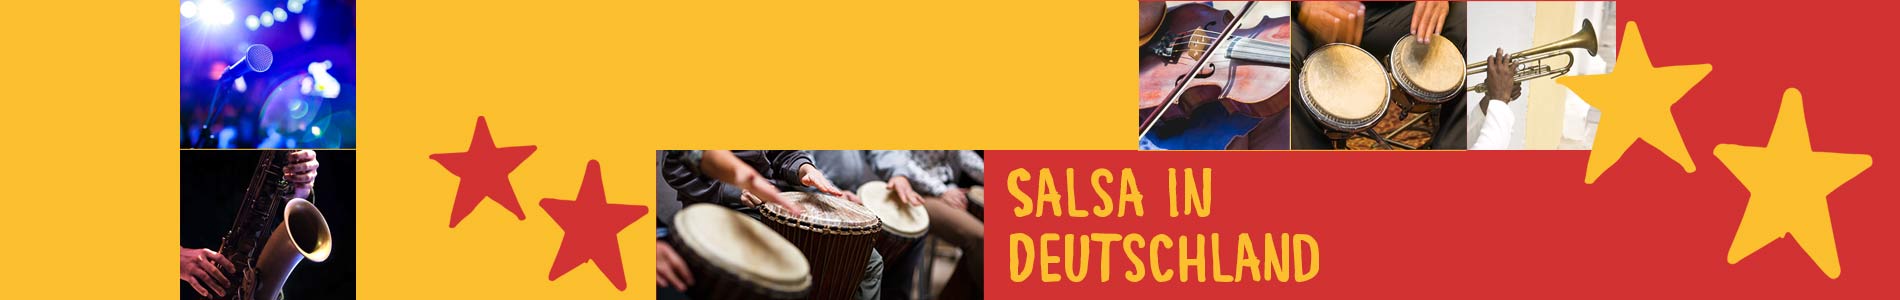 Salsa in Bunde – Salsa lernen und tanzen, Tanzkurse, Partys, Veranstaltungen